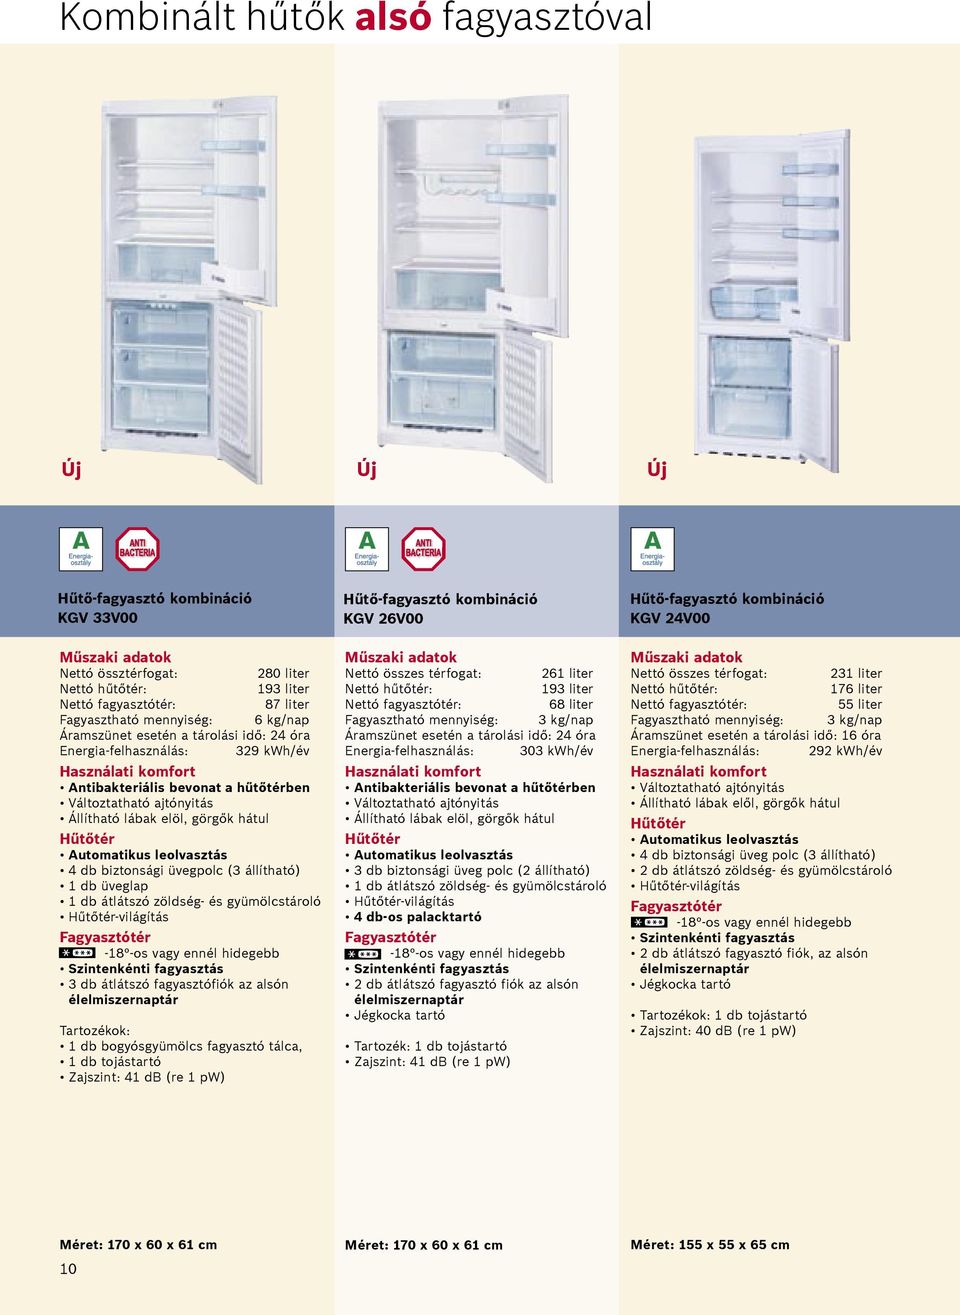 biztonsági üvegpolc (3 állítható) 1 db üveglap 1 db átlátszó zöldség- és gyümölcstároló Hűtőtér-világítás Fagyasztótér -18 -os vagy ennél hidegebb Szintenkénti fagyasztás 3 db átlátszó fagyasztófiók